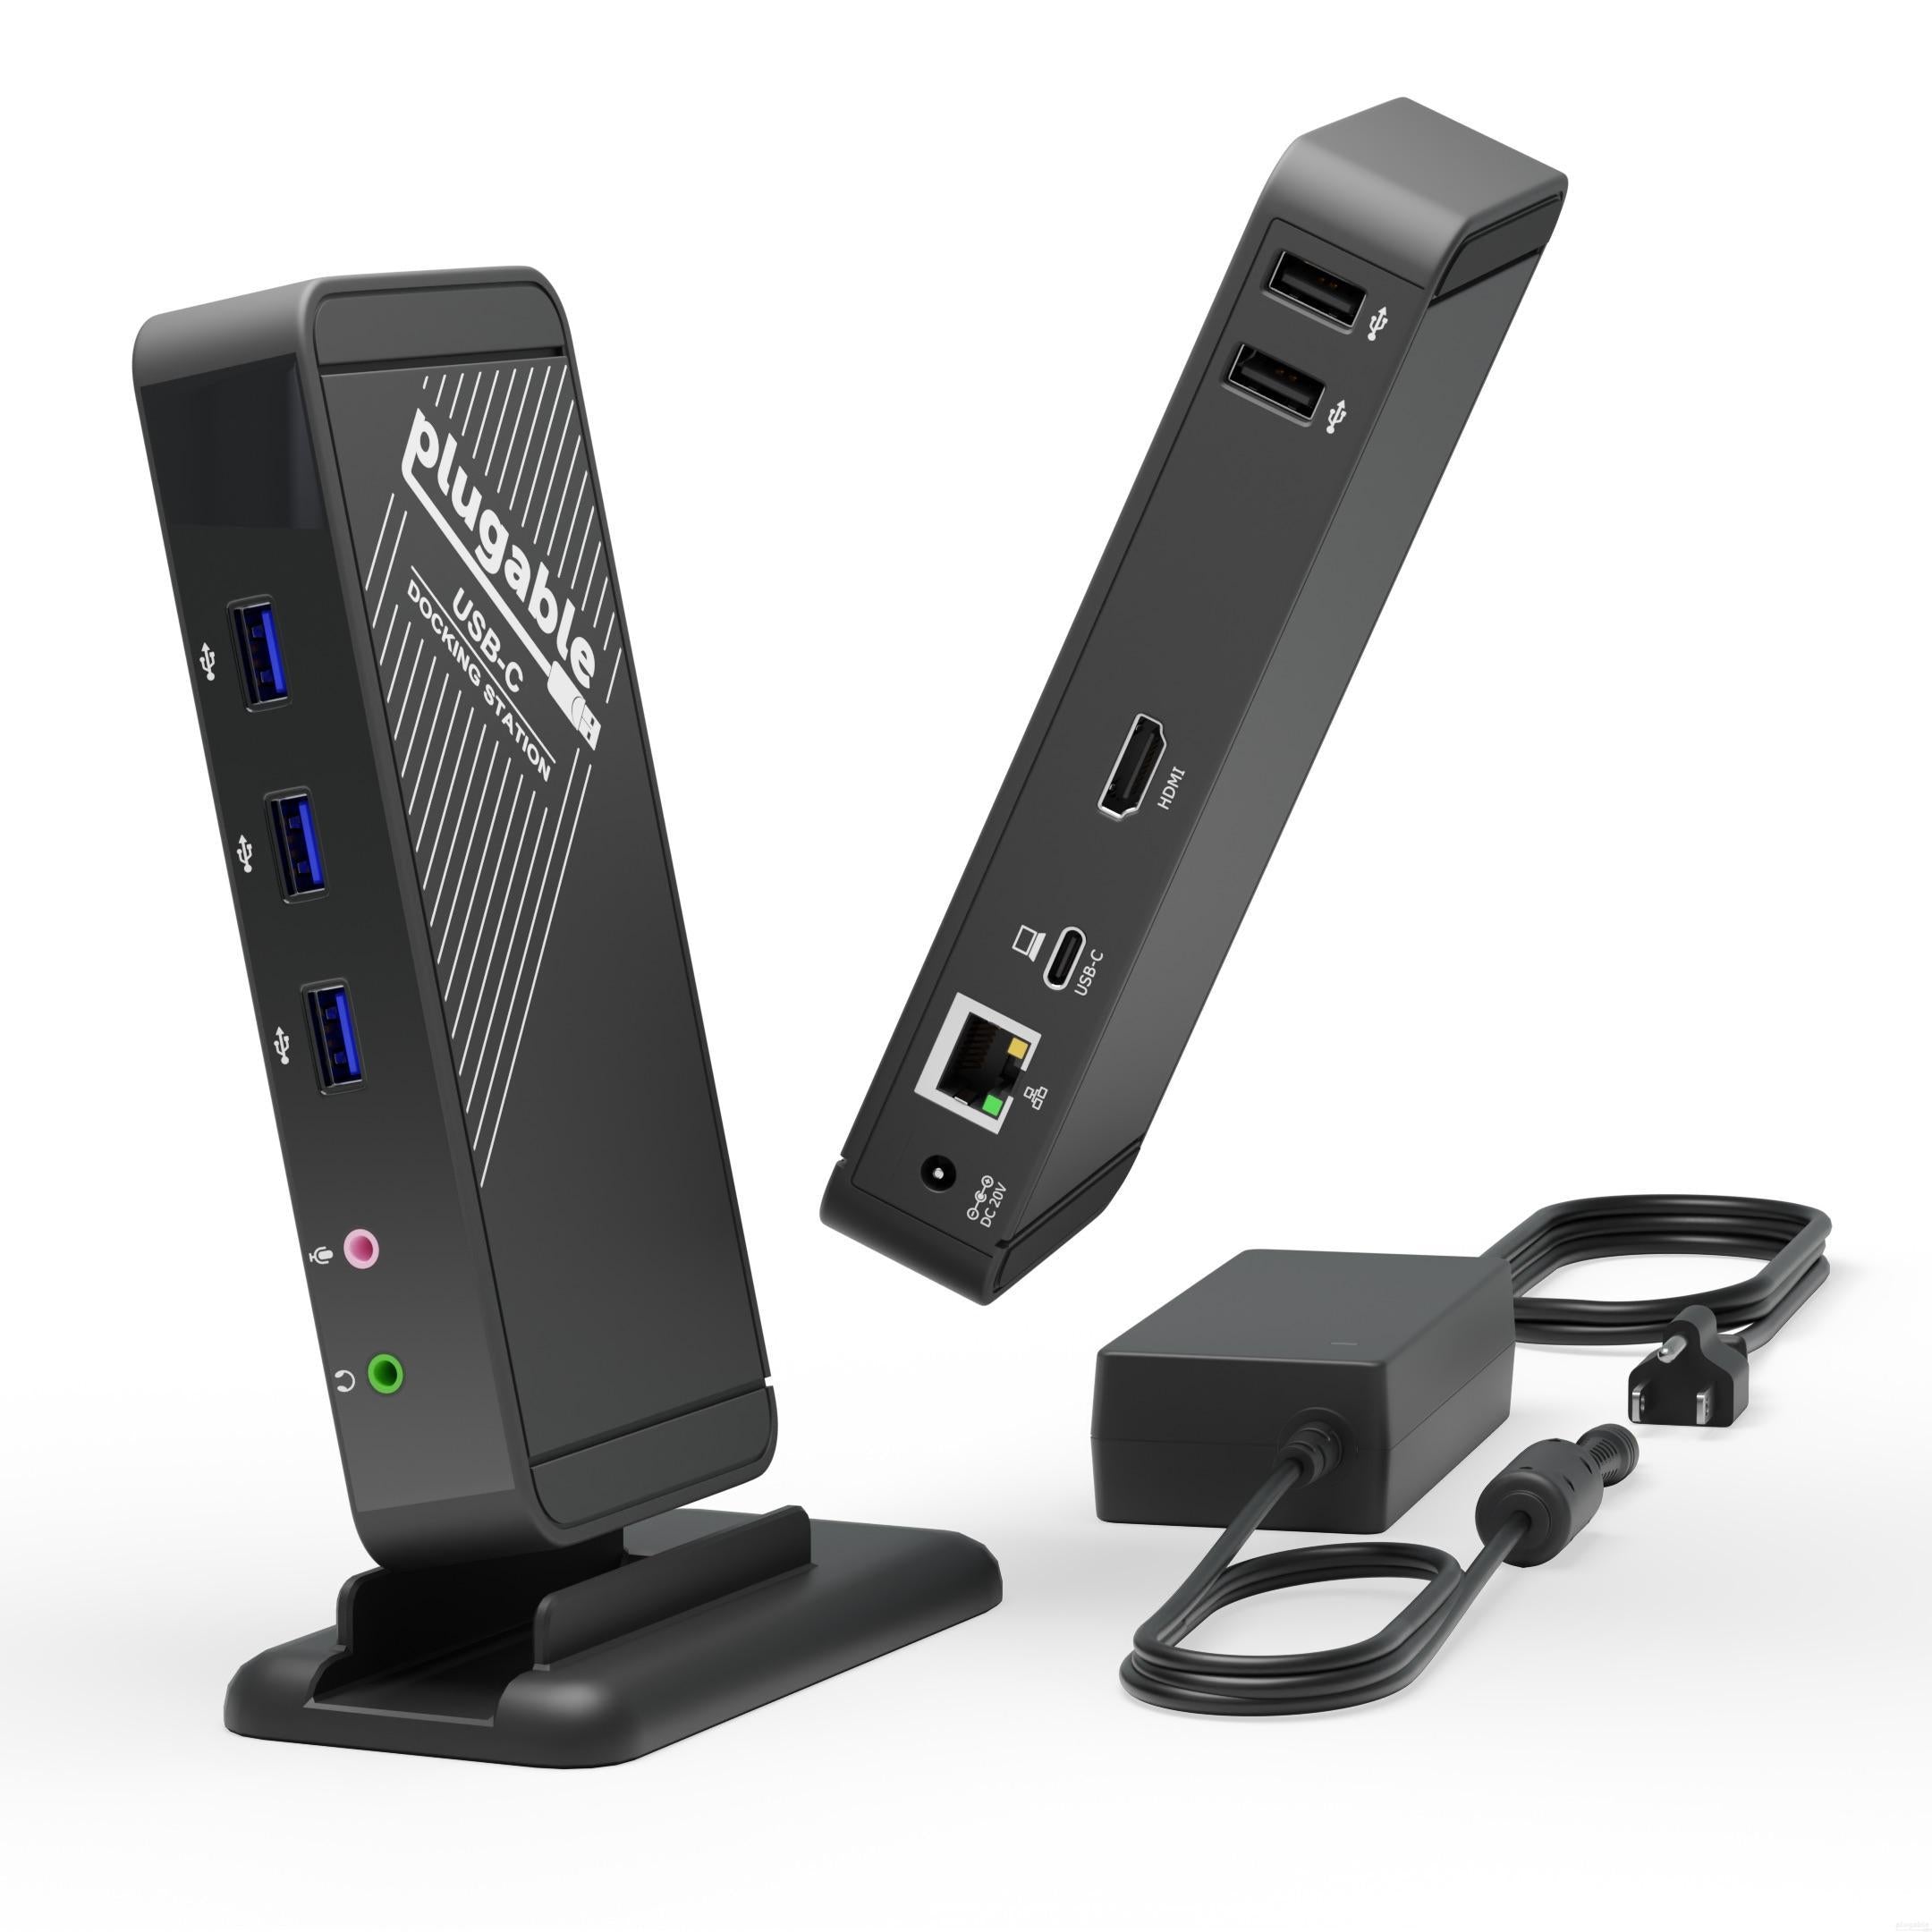 Plugable USB 3.0 and USB-C 7-Port Charging Hub – Plugable Technologies